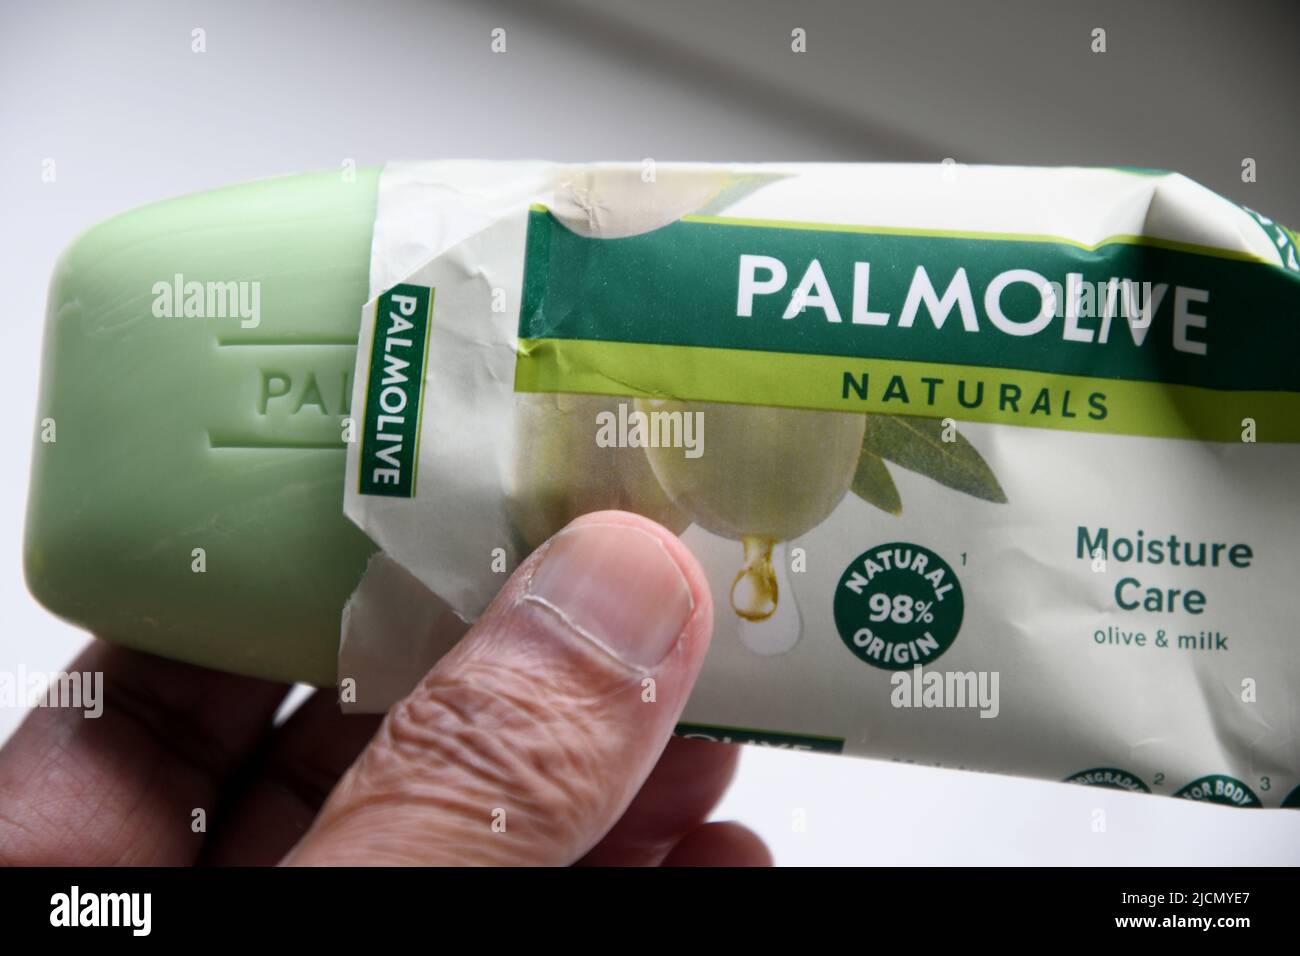 Copenhague /Danemark/14 juin 2022 / savon pour les mains couleur verte pour pallmolive inm Copenhague Danemark.( photo..Francis Joseph Dean/Deanimages). Banque D'Images